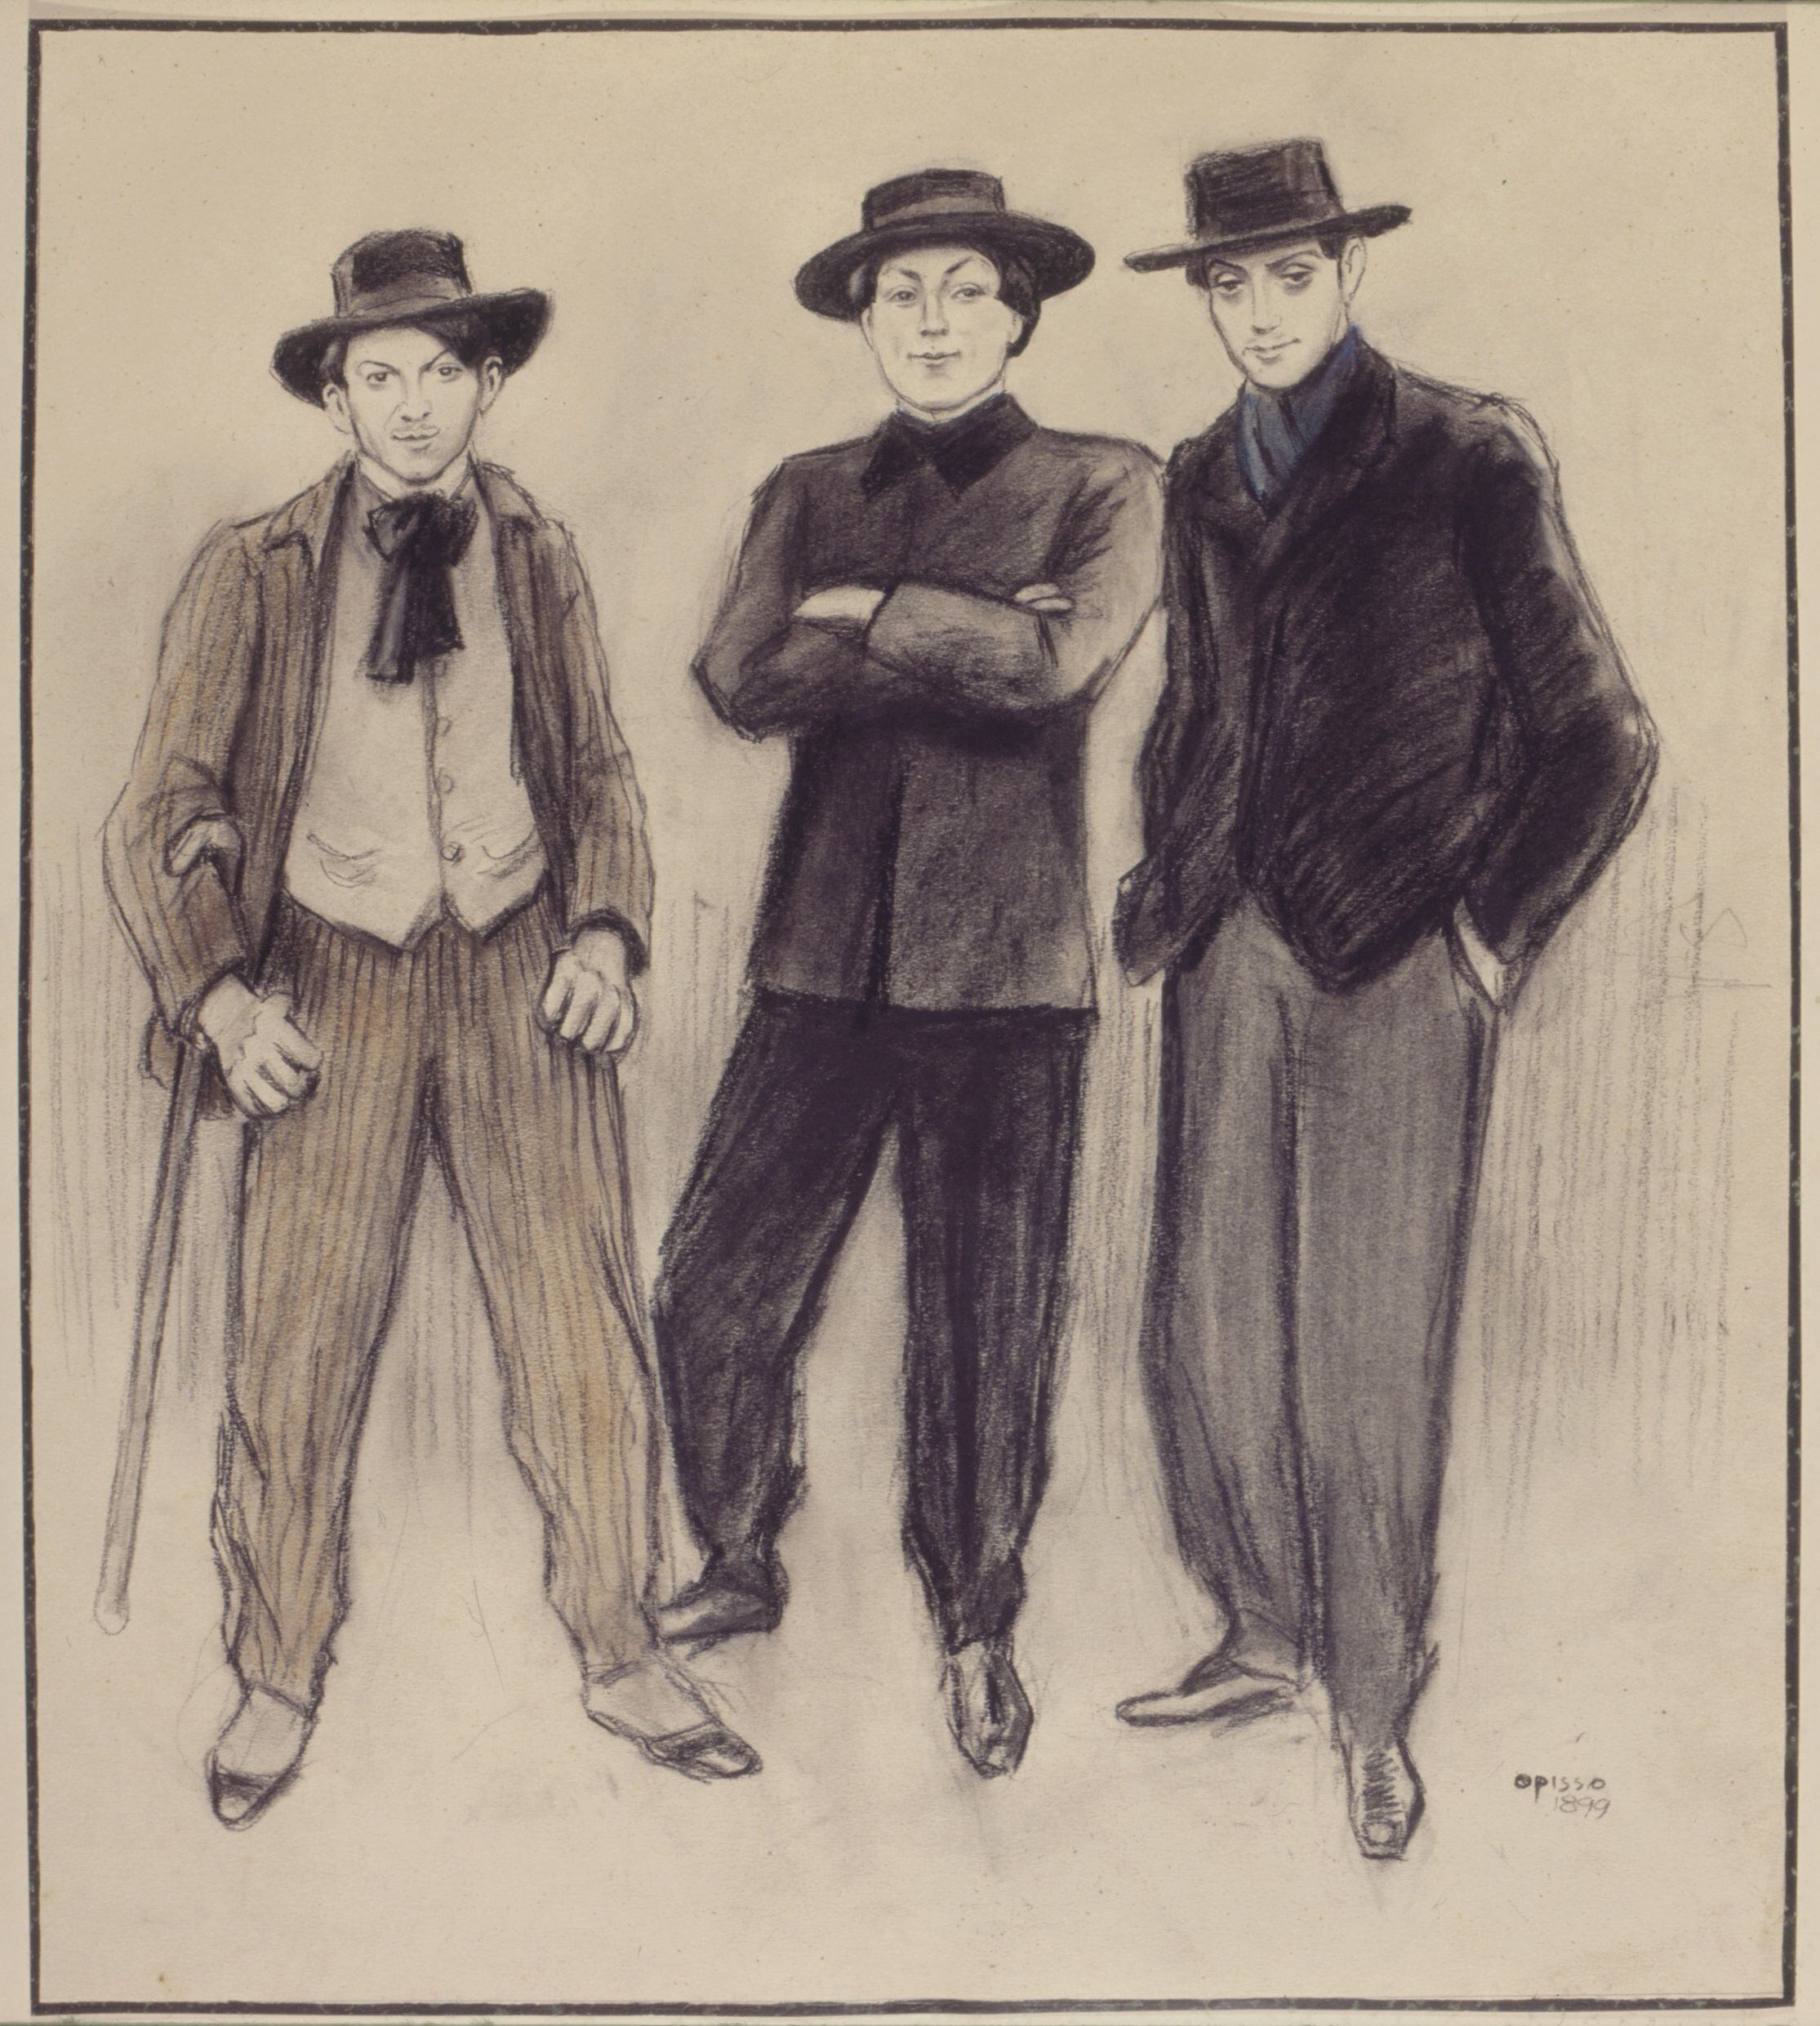 Picasso, Nonell i Vallmitjana (1899), per Ricard Opisso. Cedida per la Fundació Palau.